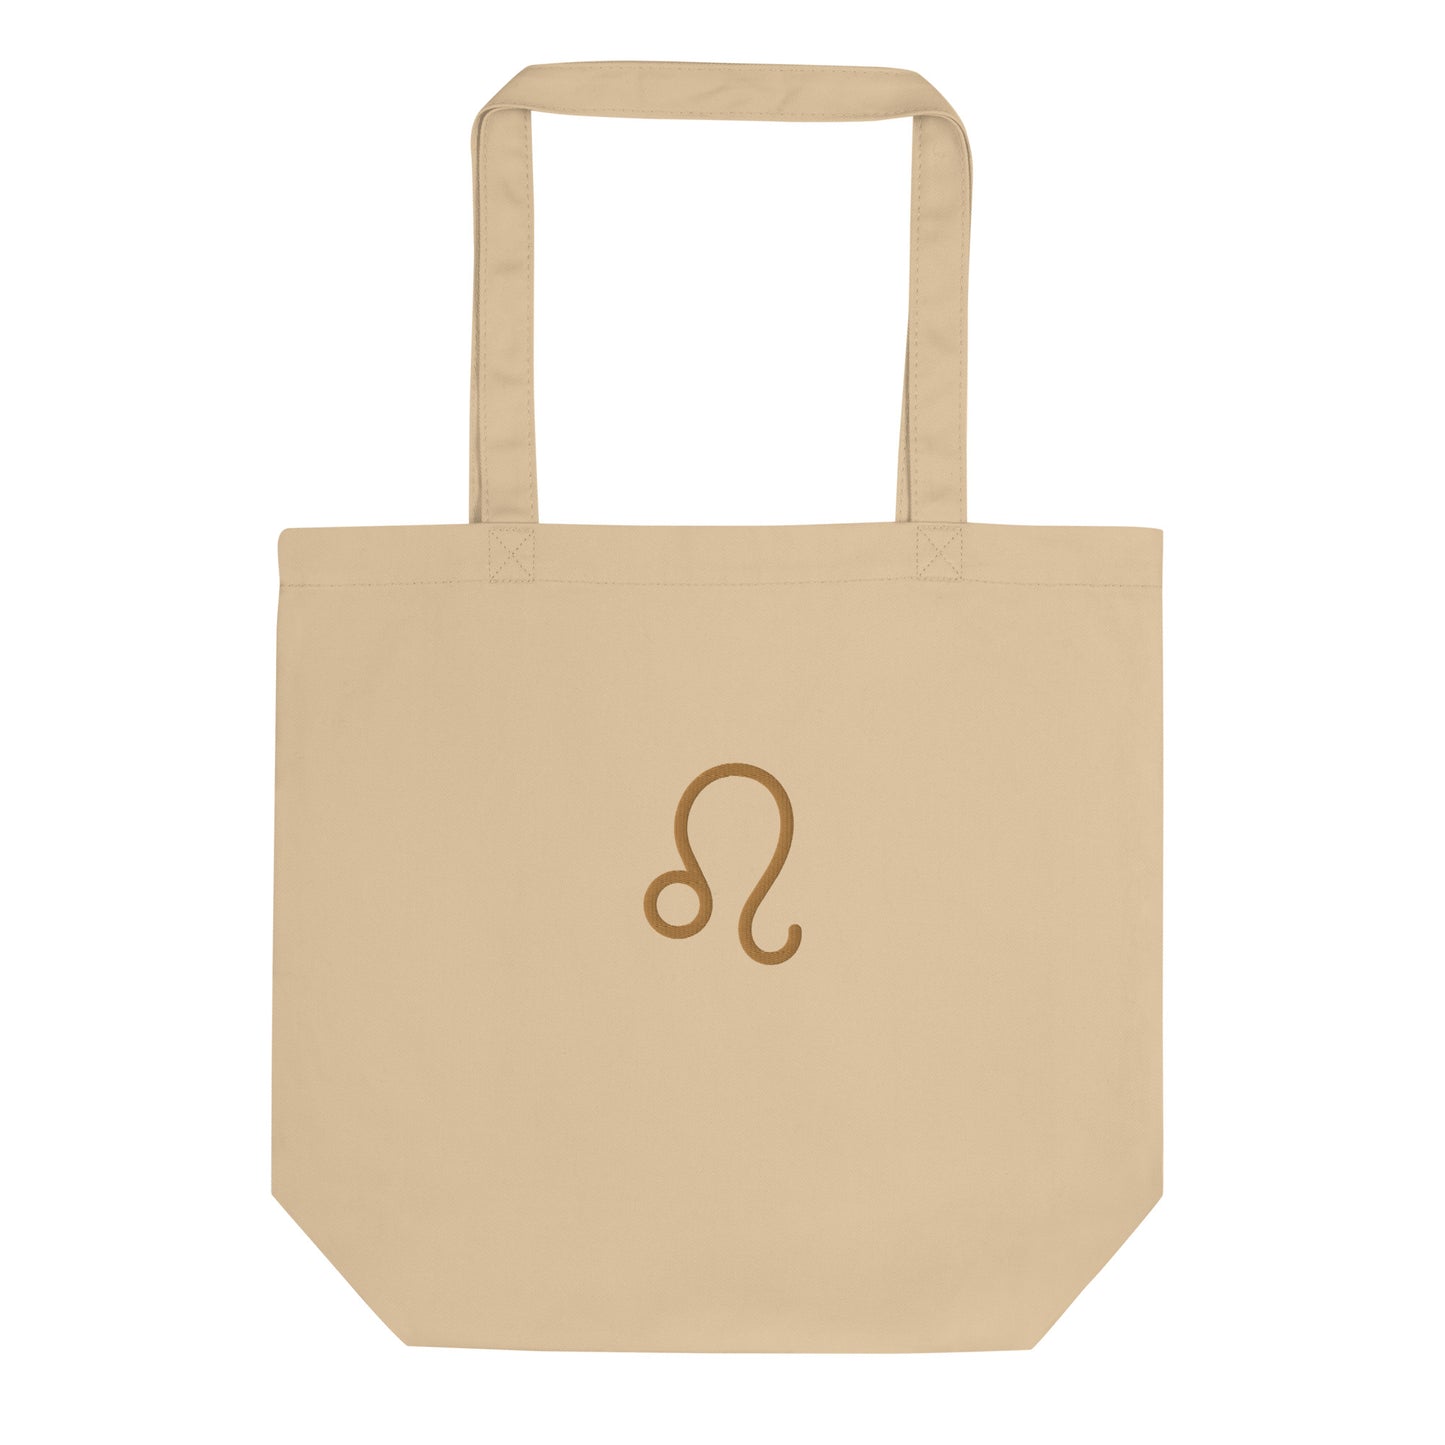 Leo - Small Open Tote Bag - Gold Thread